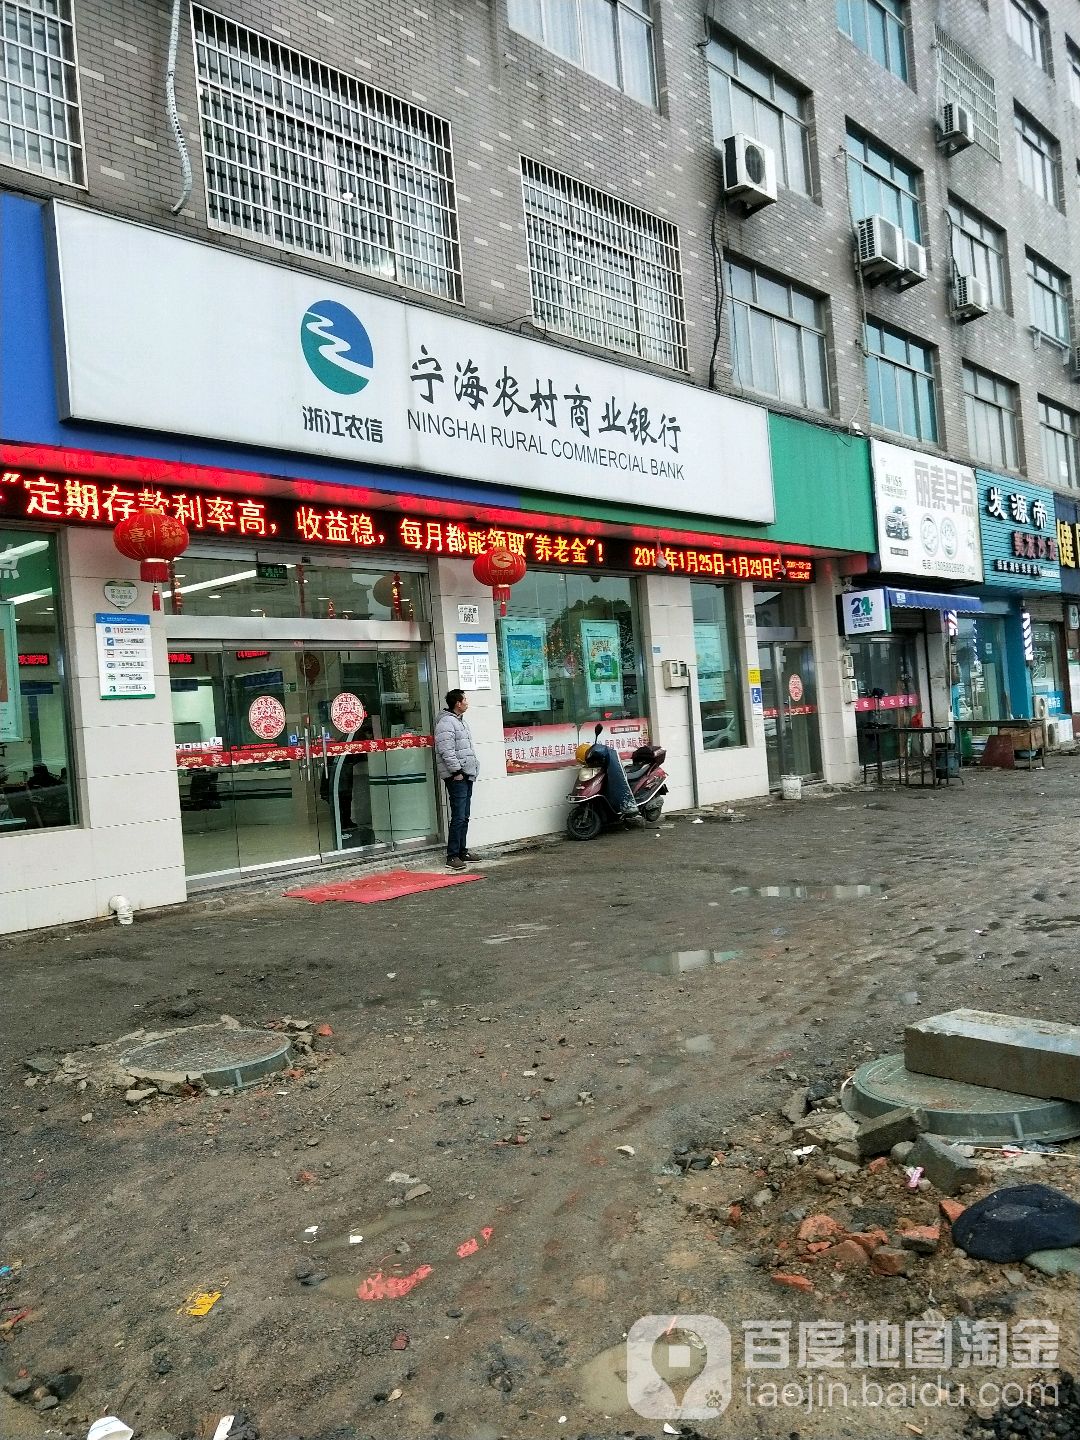 寧海農村商業銀行24小時自助銀行服務(冠莊信用社)